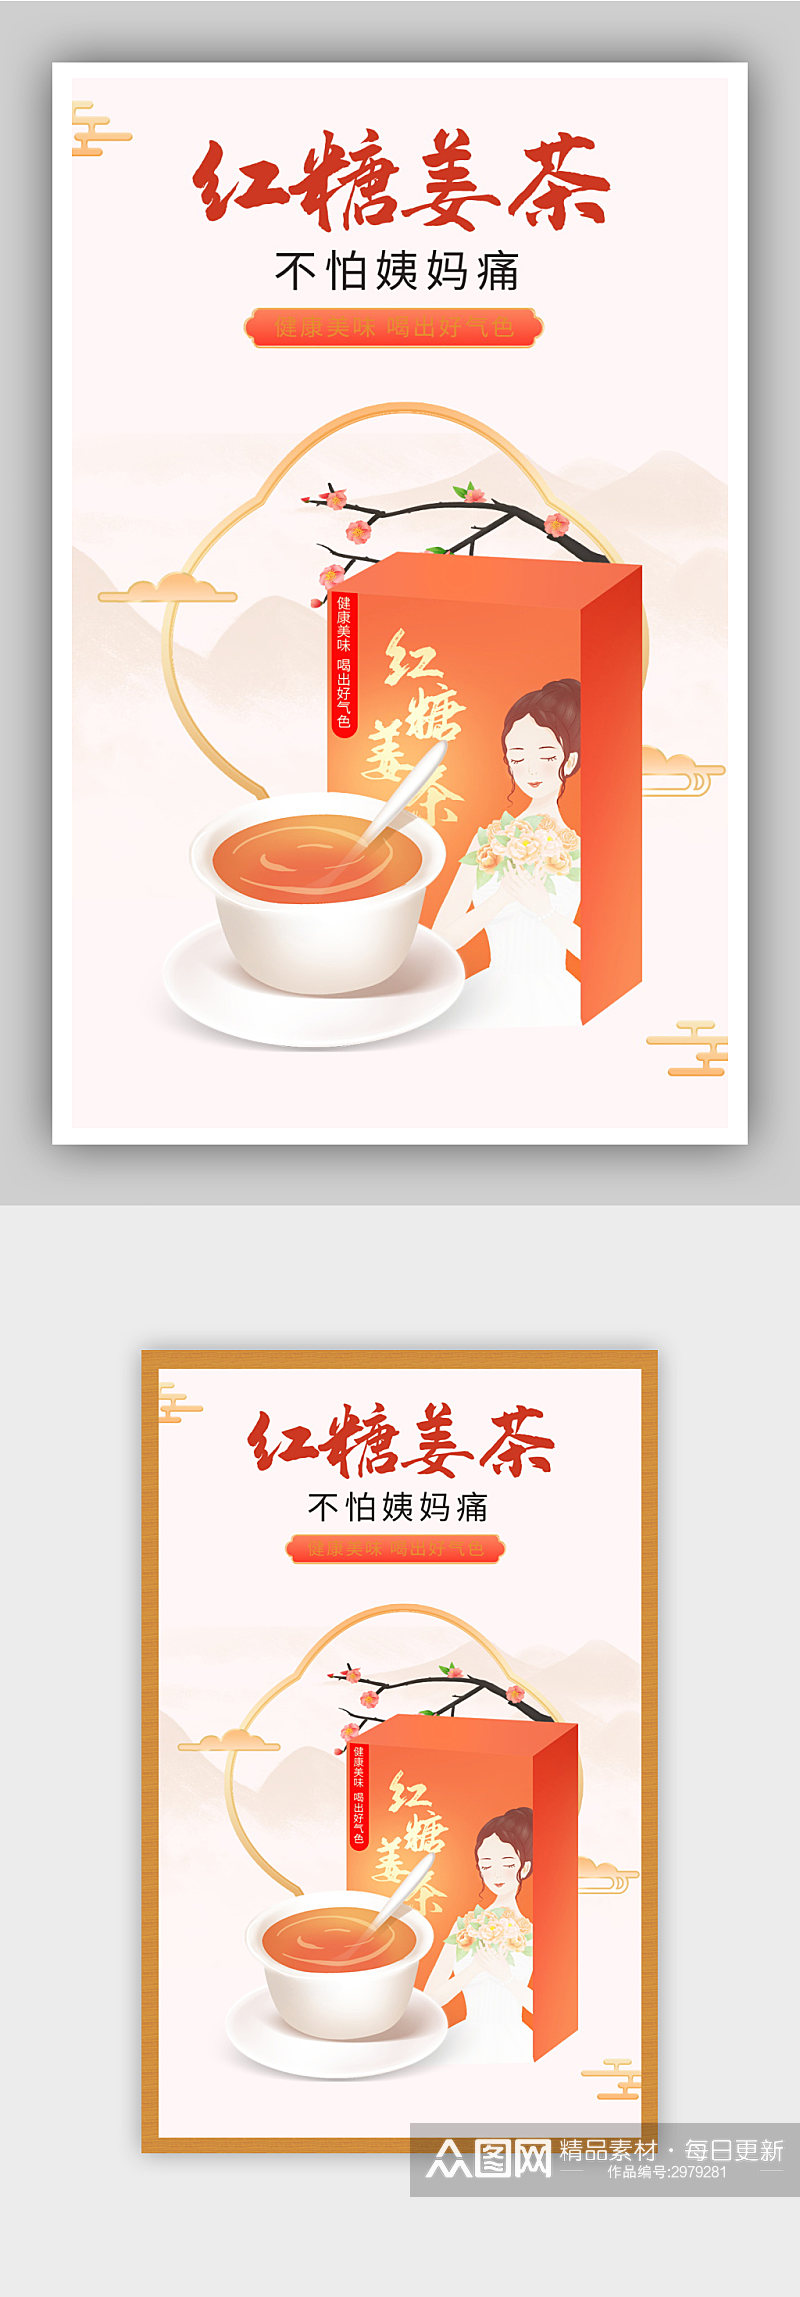 中国风海报复古食品茶饮红糖水姜茶食品海报素材